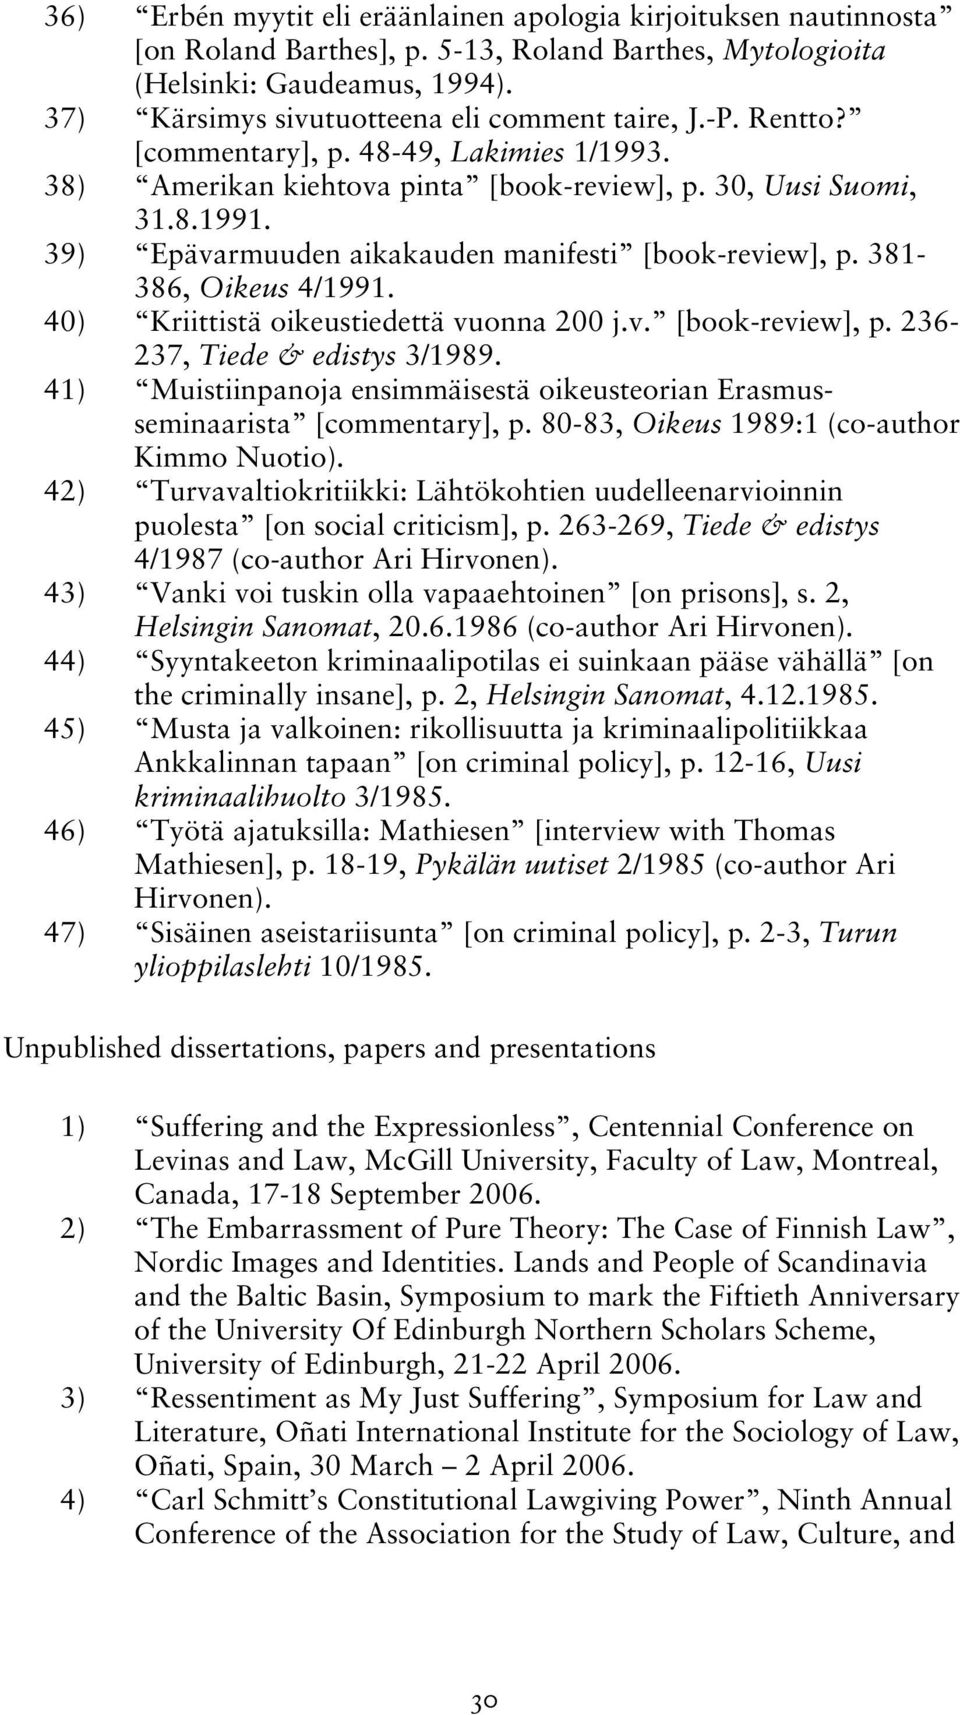 39) Epävarmuuden aikakauden manifesti [book-review], p. 381-386, Oikeus 4/1991. 40) Kriittistä oikeustiedettä vuonna 200 j.v. [book-review], p. 236-237, Tiede & edistys 3/1989.